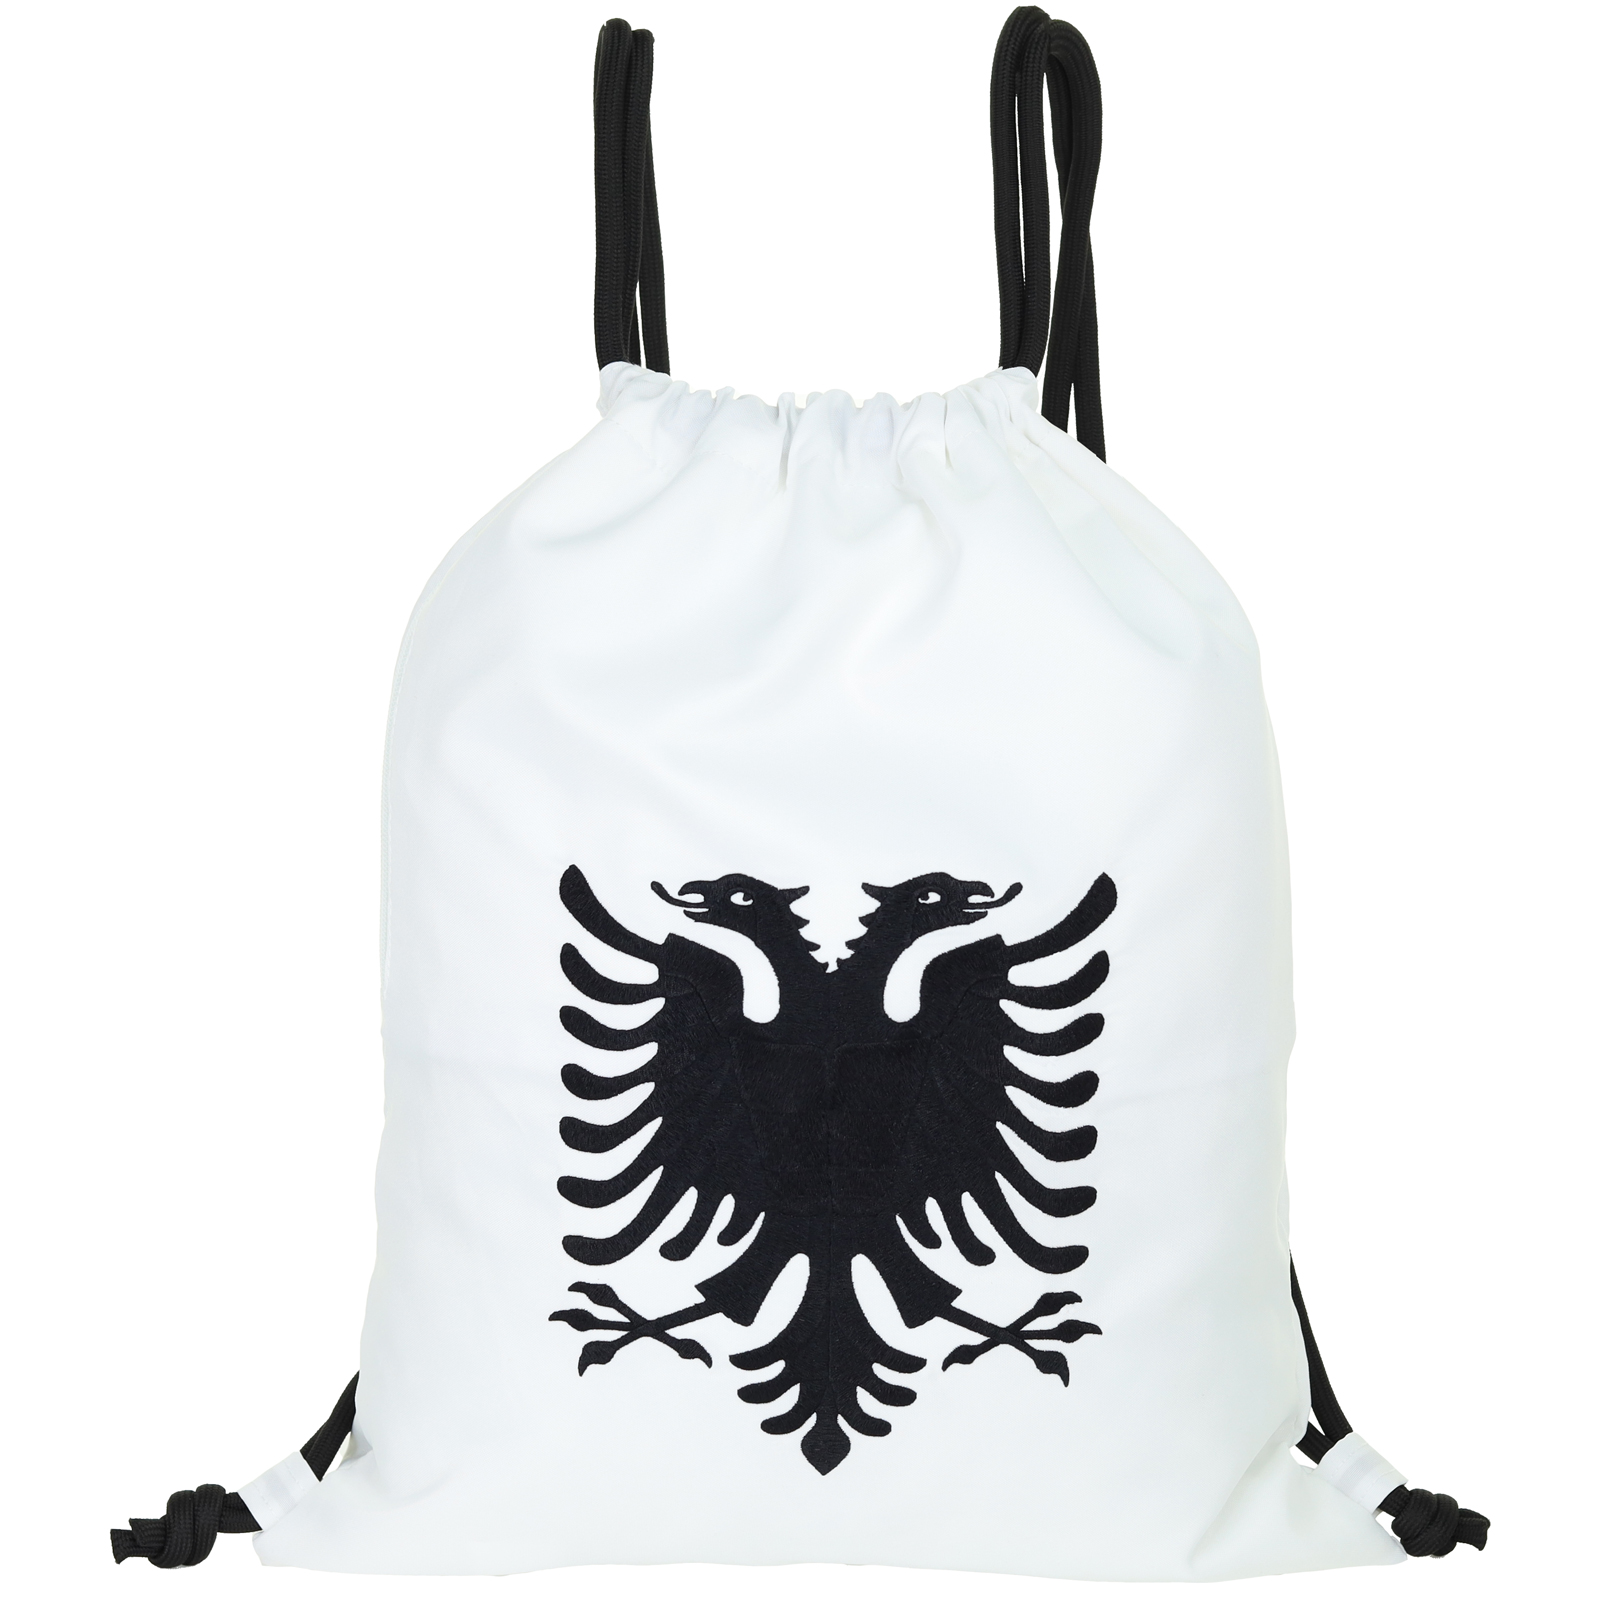 Flagge Albanien zweiköpfiger Adler - Turnbeutel